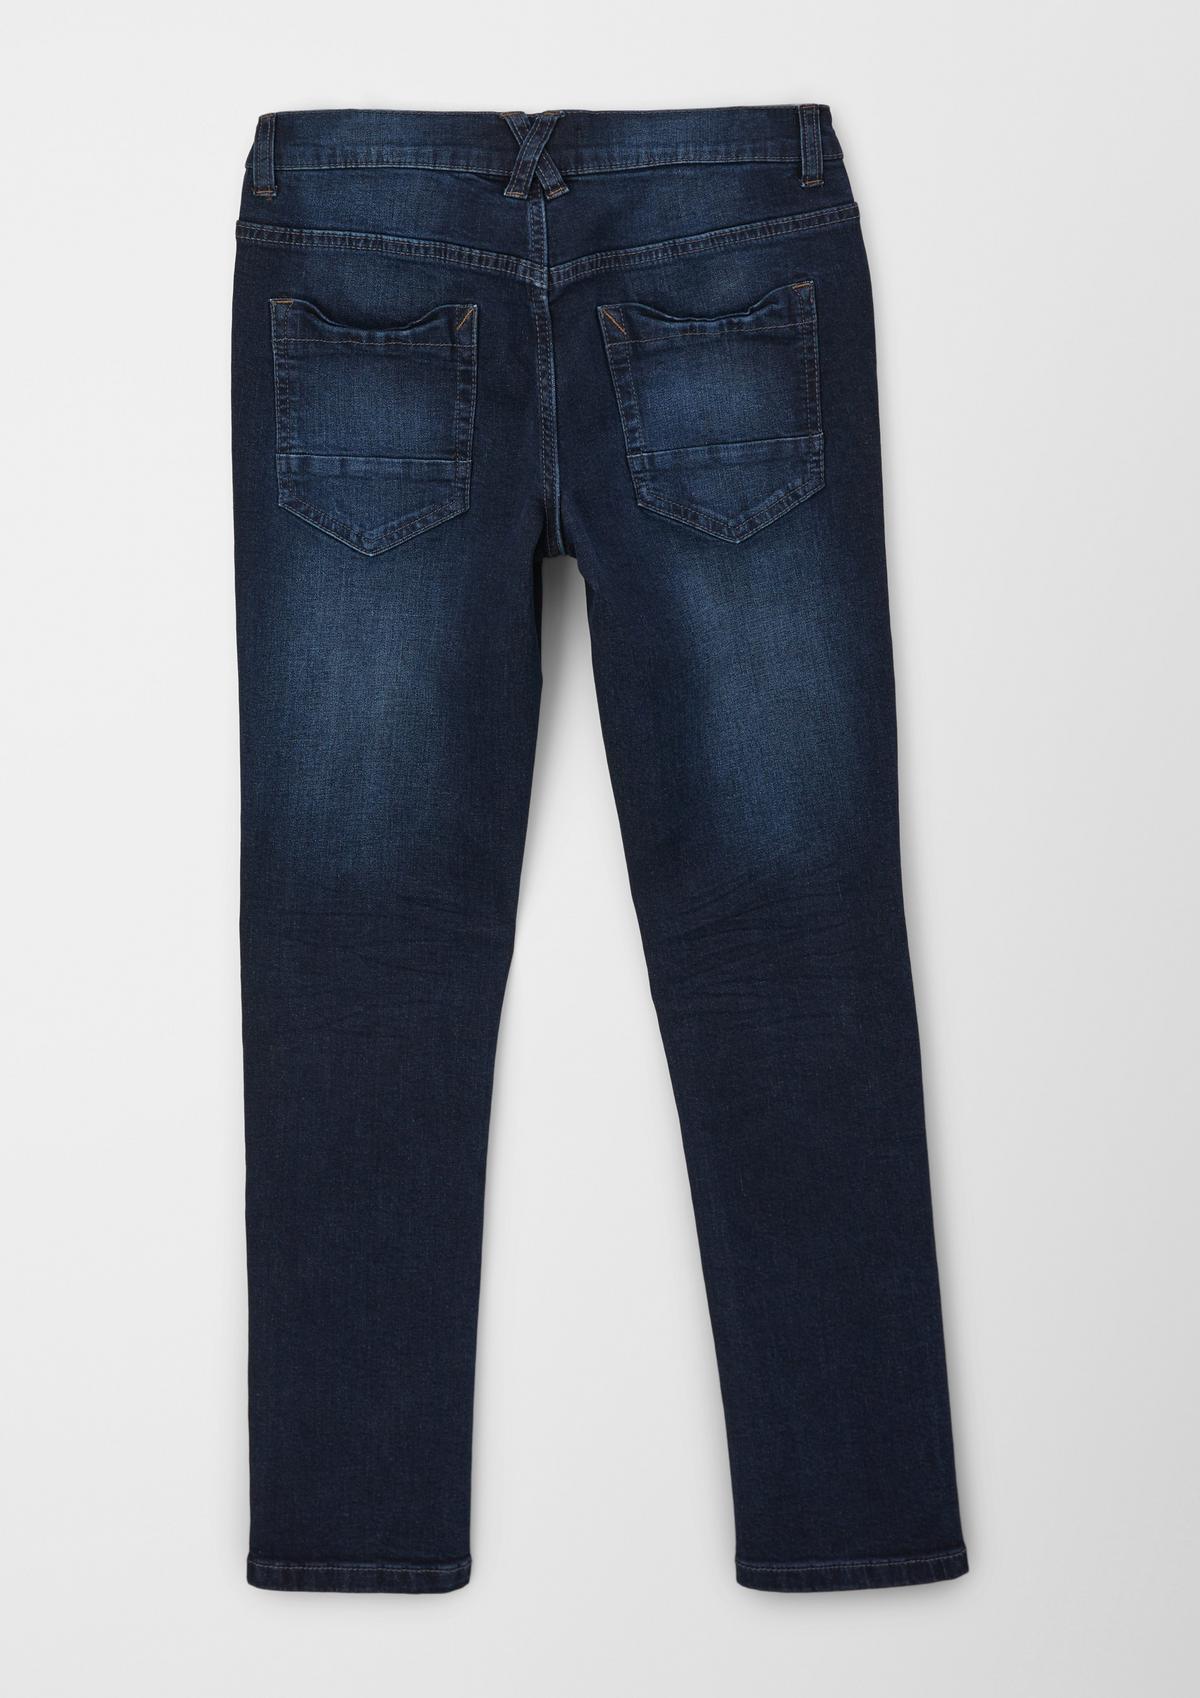 s.Oliver Regular: jeans hlače obrabljenega videza